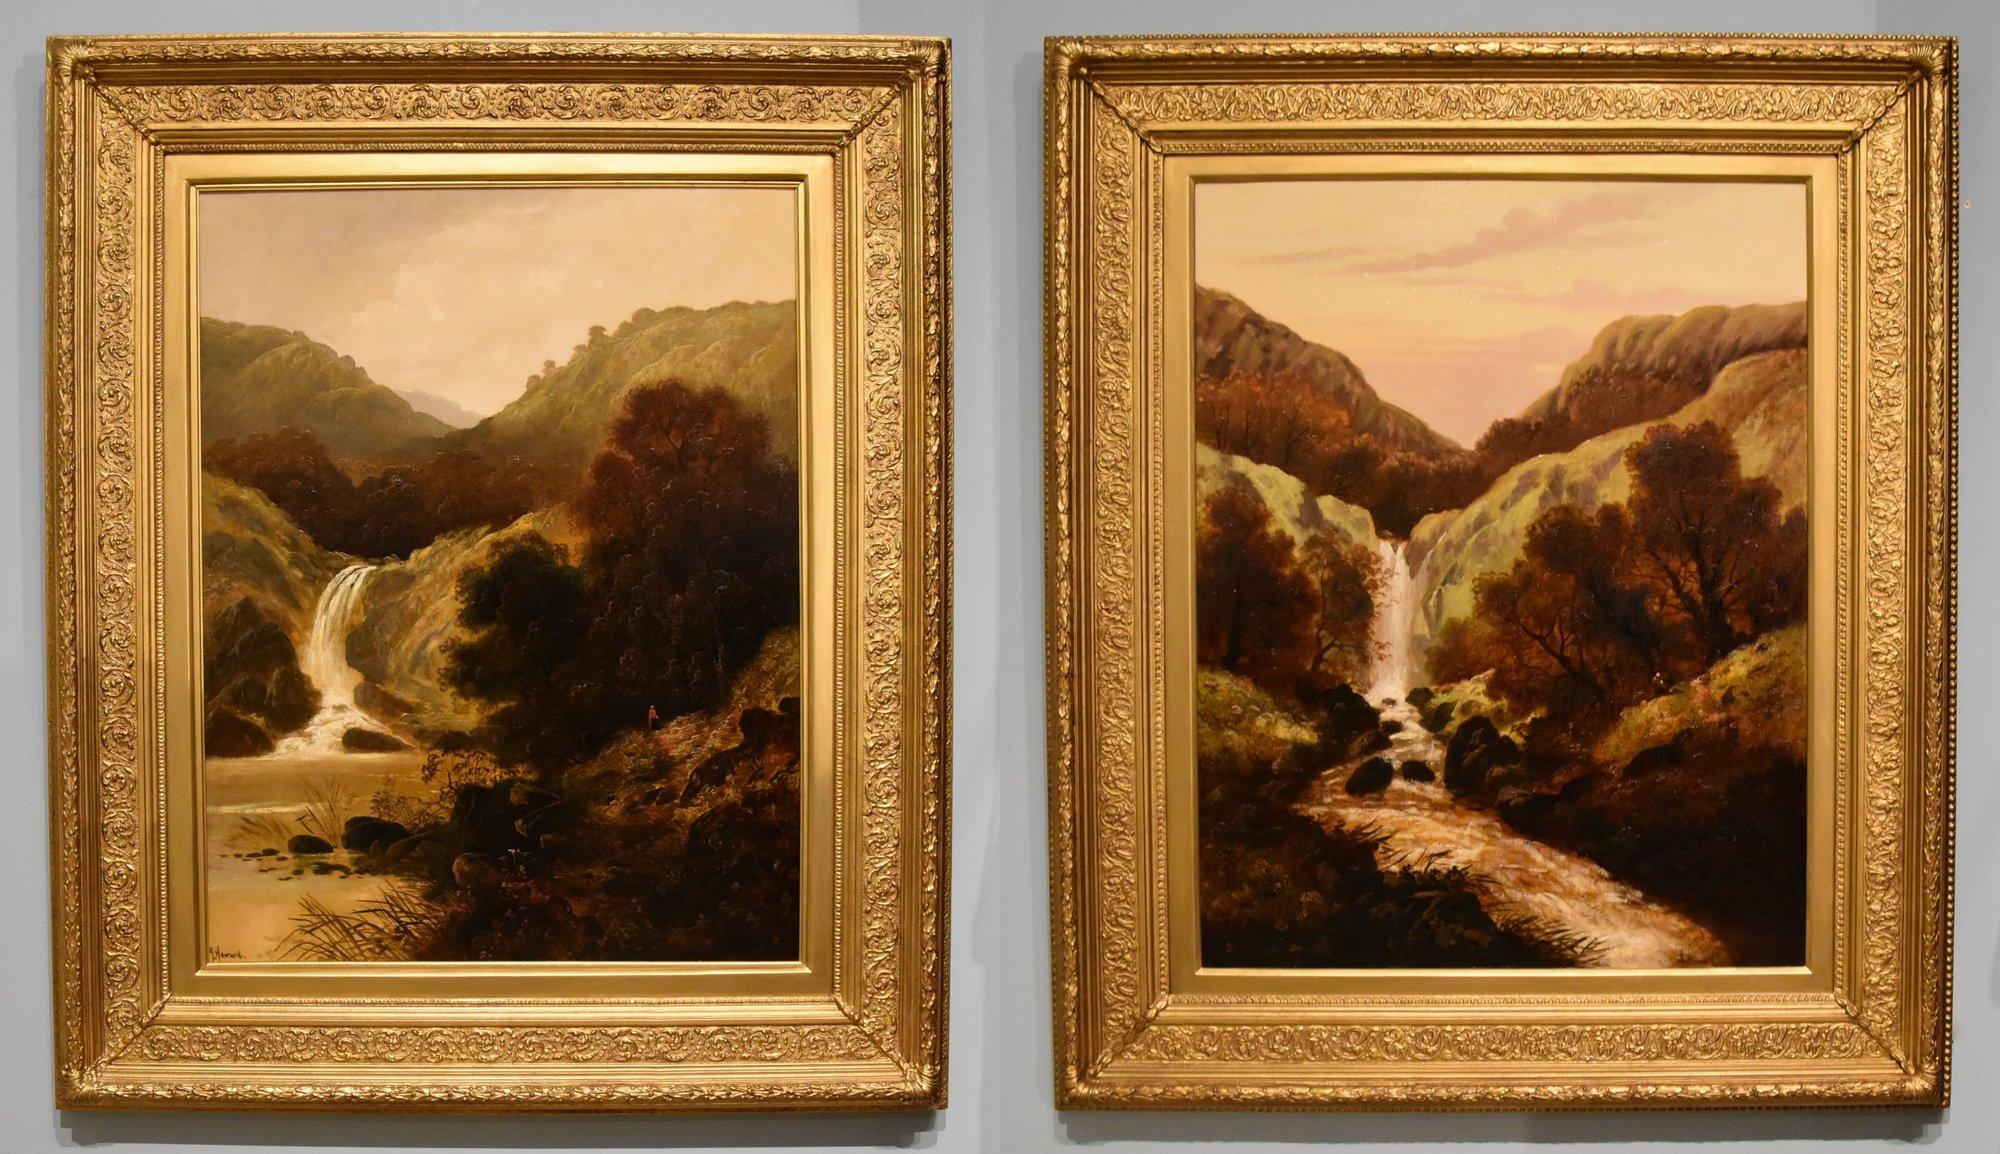 Paire de peintures à l'huile par J Howard "Highland Waterfalls" fleuries des années 1880. Peintre londonien de scènes atmosphériques exposé à Londres. Huile sur toile. Signé. 

Dimensions sans cadre 36  x 38 pouces
Dimensions encadré 49  x 41